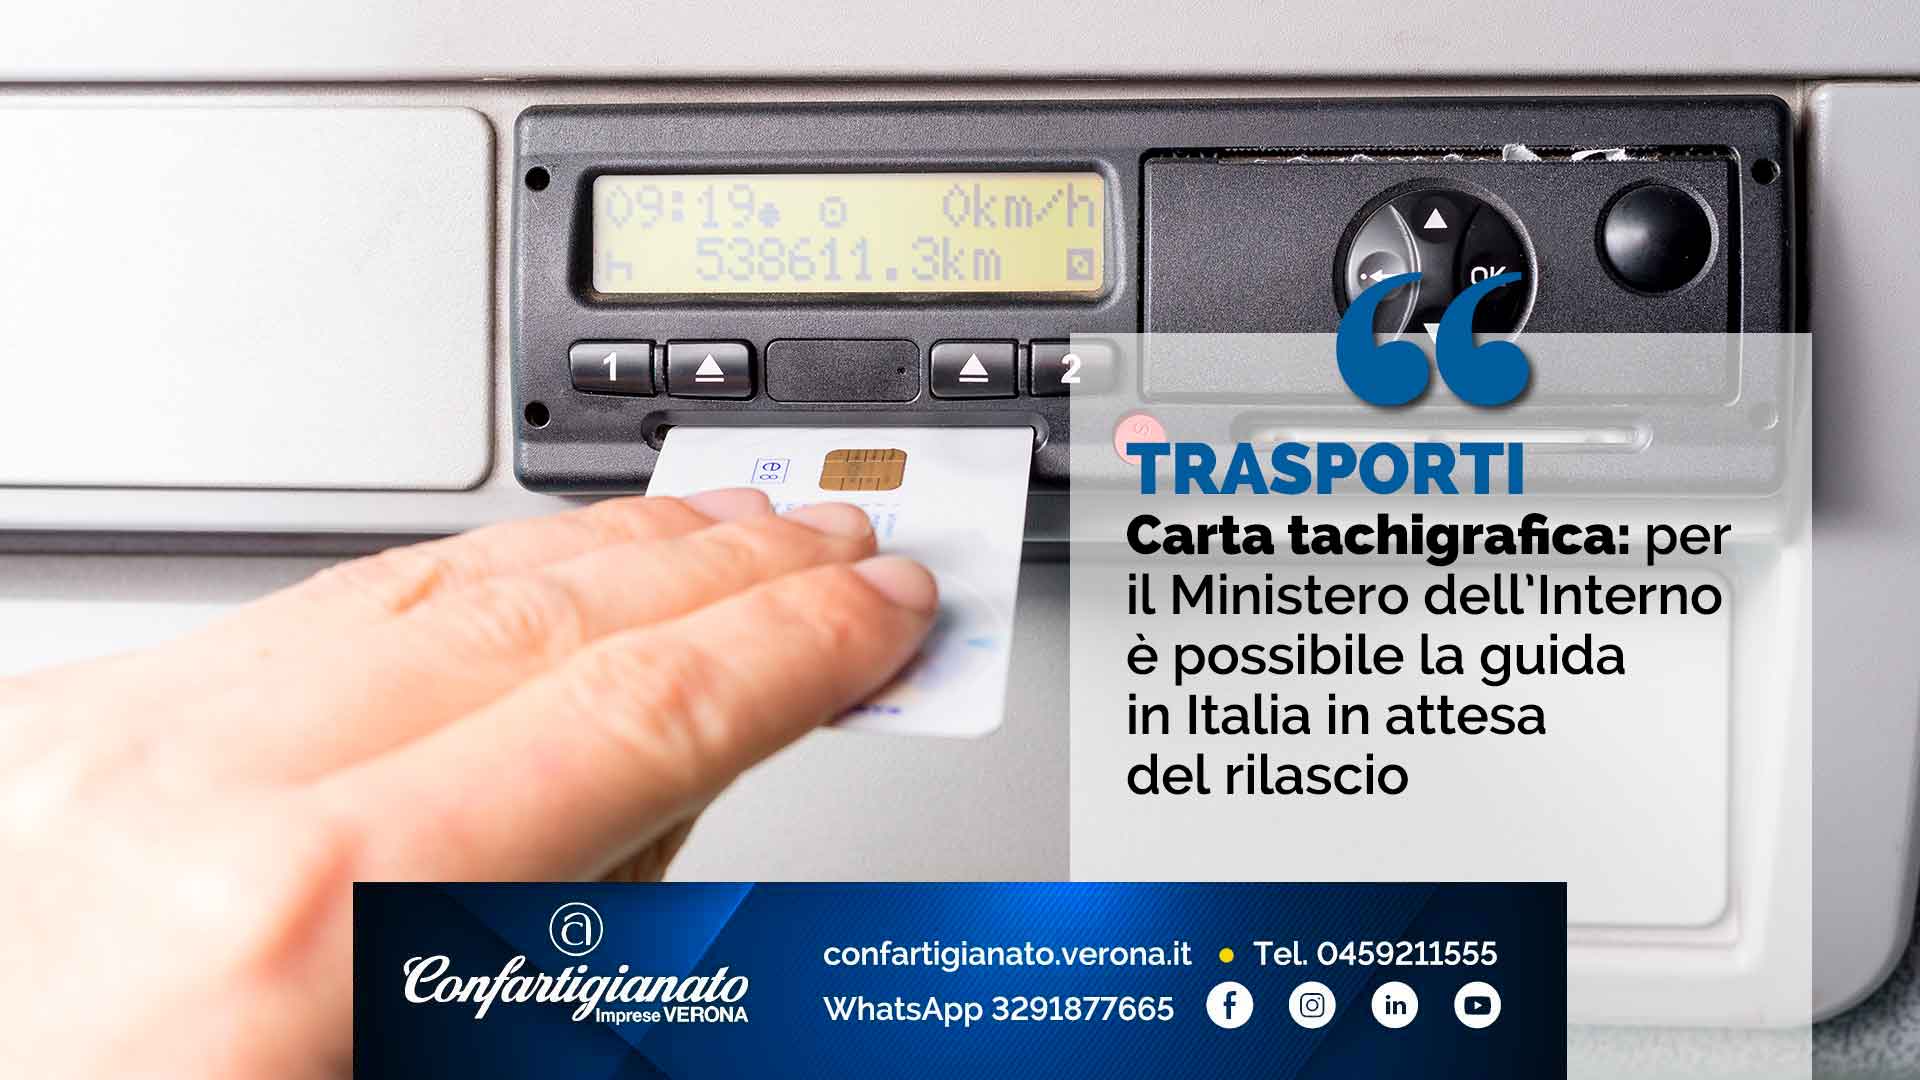 TRASPORTI – Carta tachigrafica: per il Ministero dell’Interno è possibile la guida in Italia in attesa del rilascio